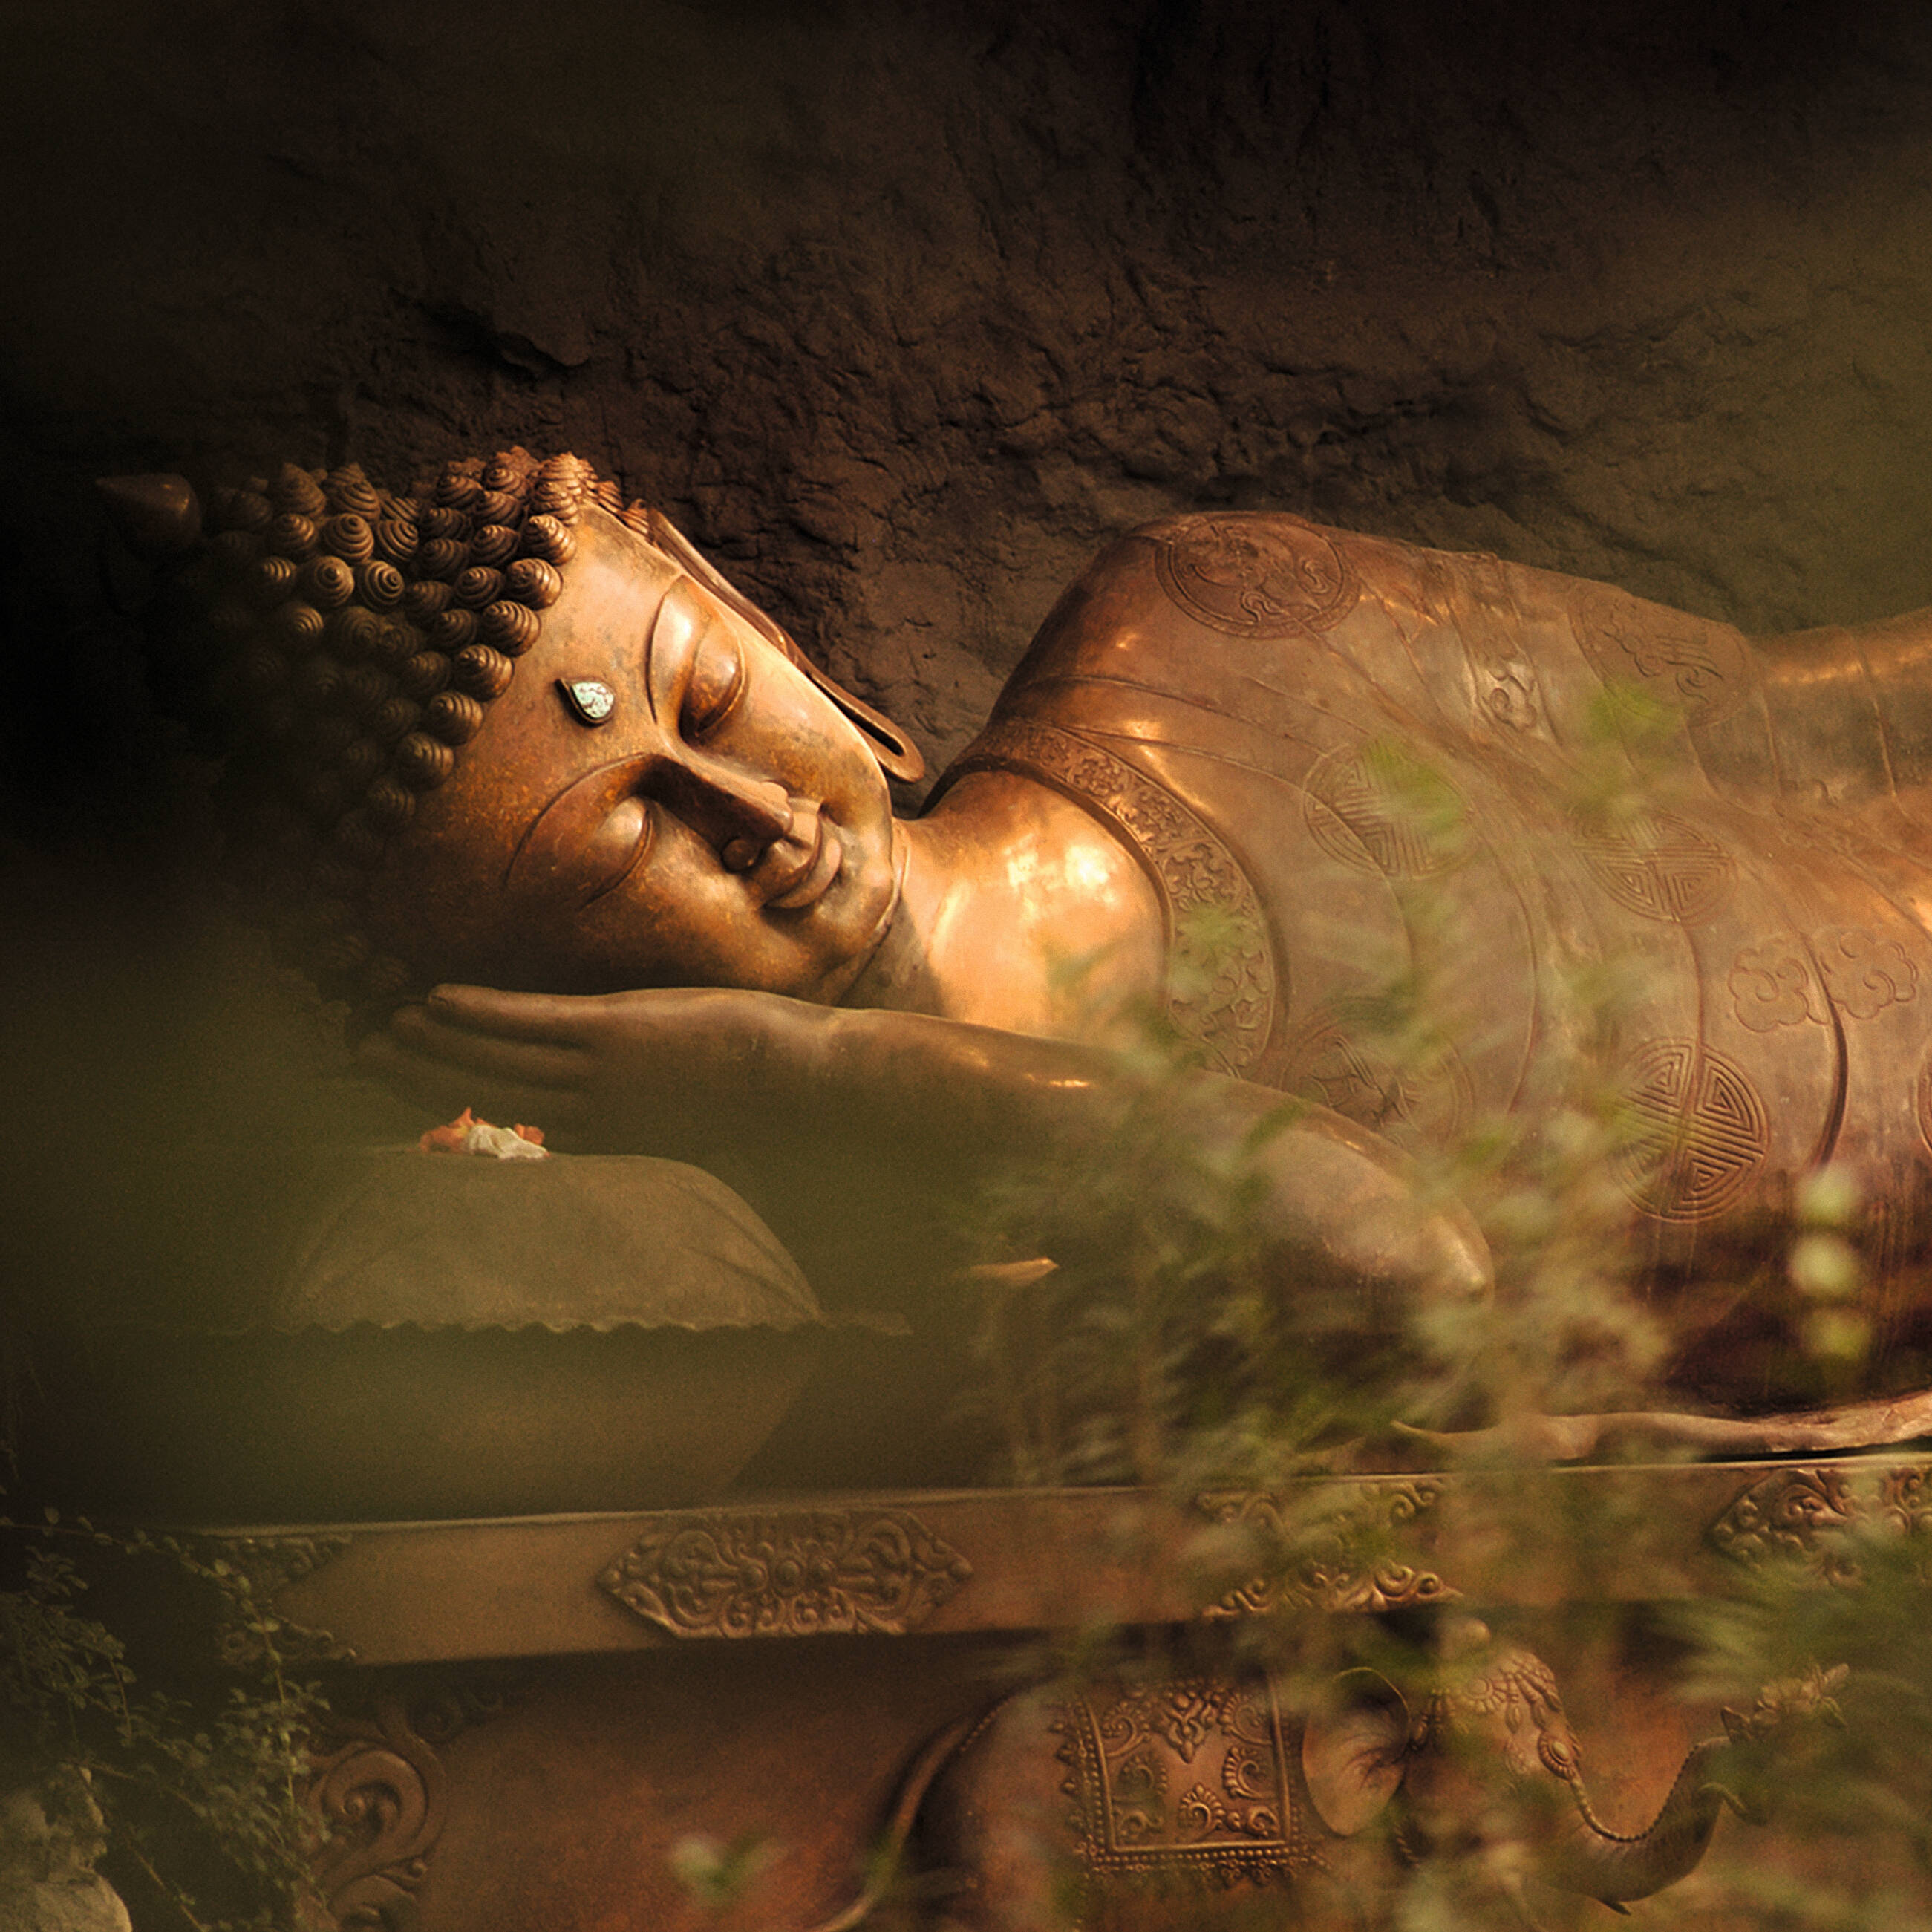 Liegende Buddha-Statue in der botanika